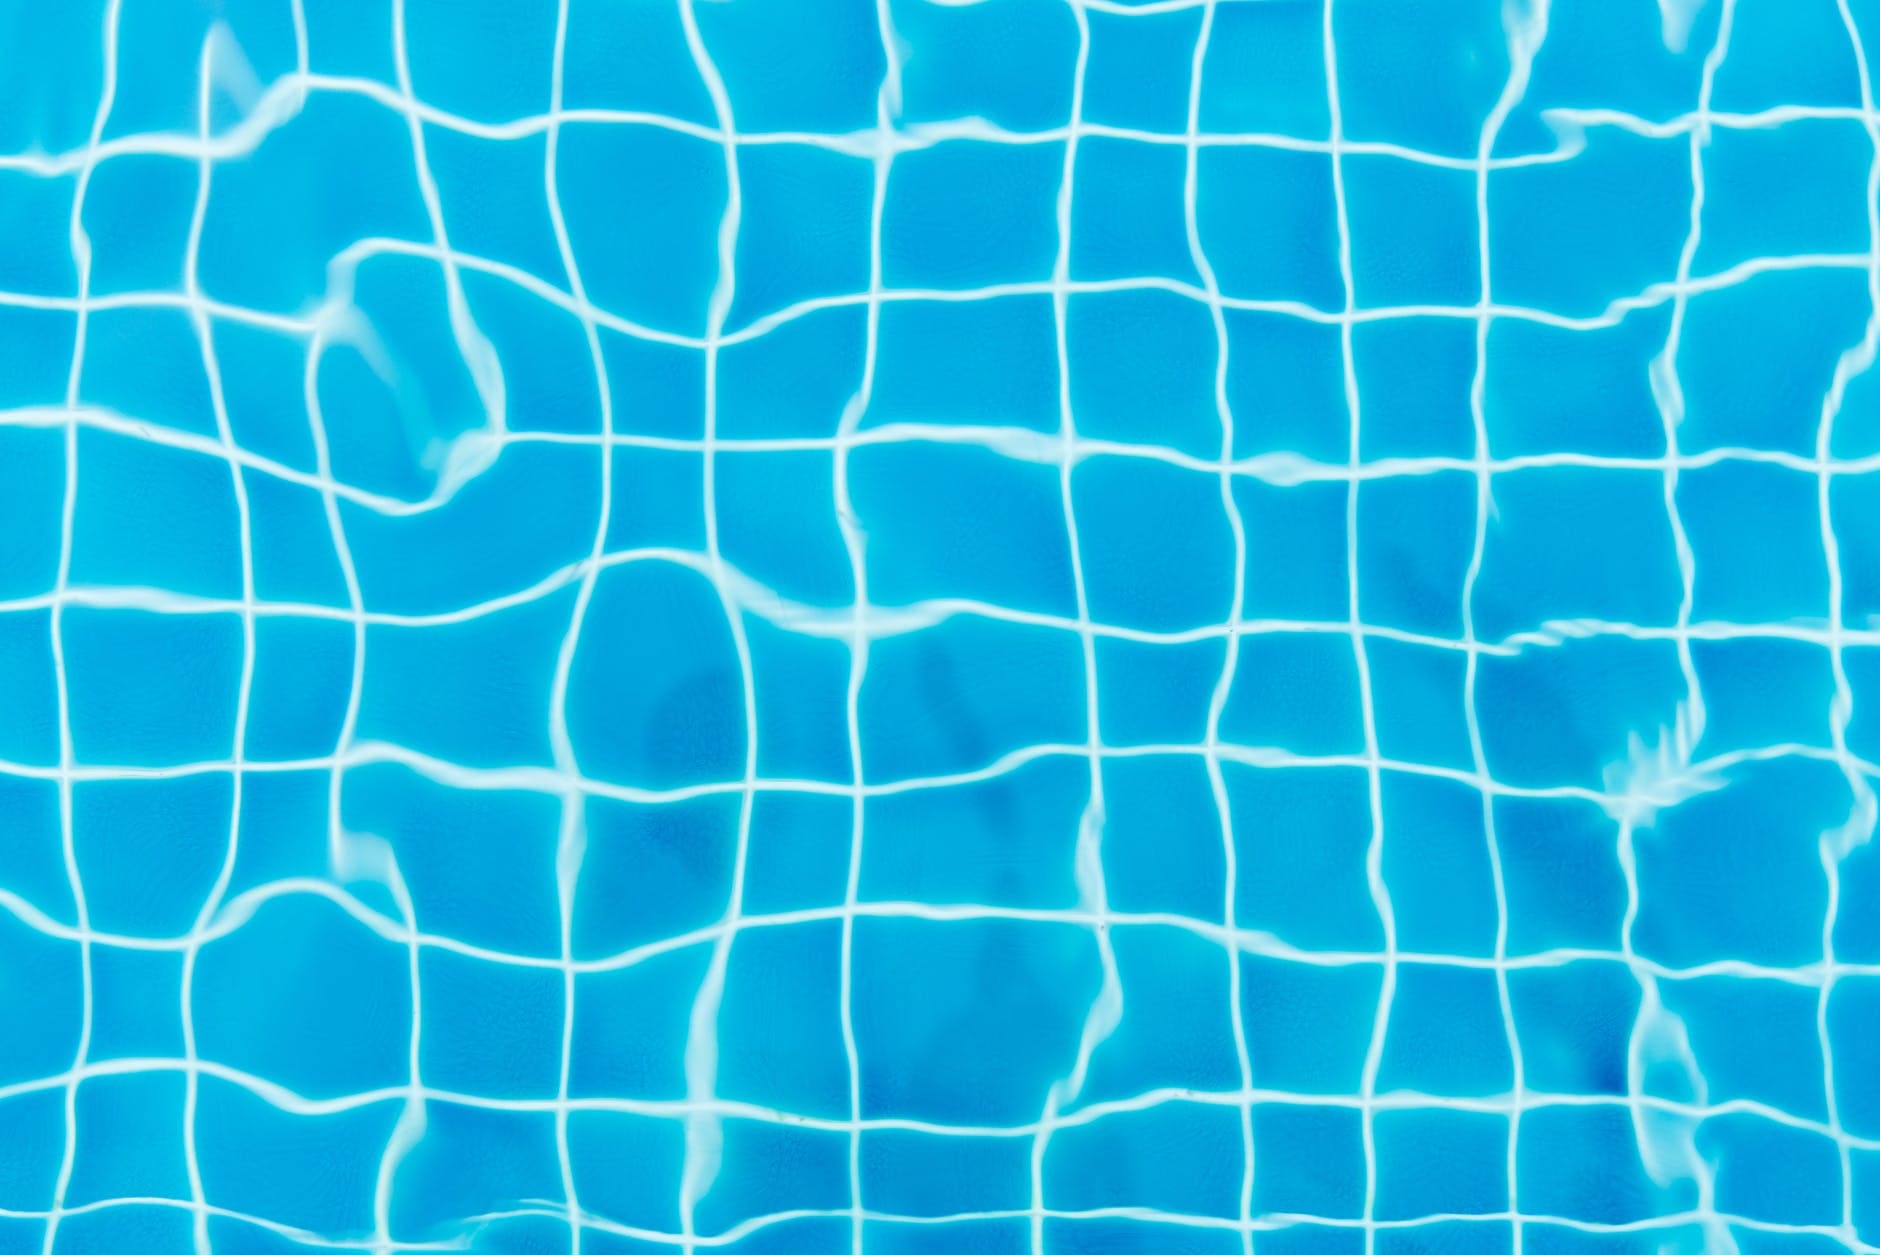 Homem inglês de 30 anos morreu afogado em piscina de hotel no Algarve